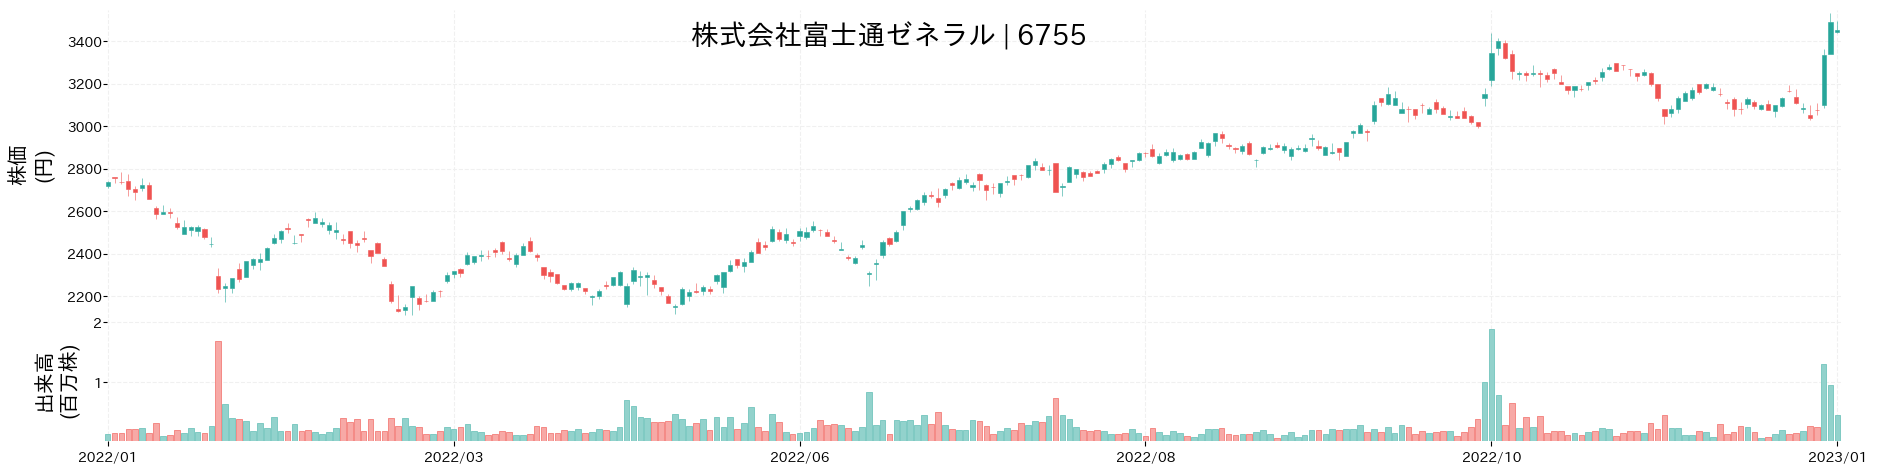 富士通ゼネラルの株価推移(2022)